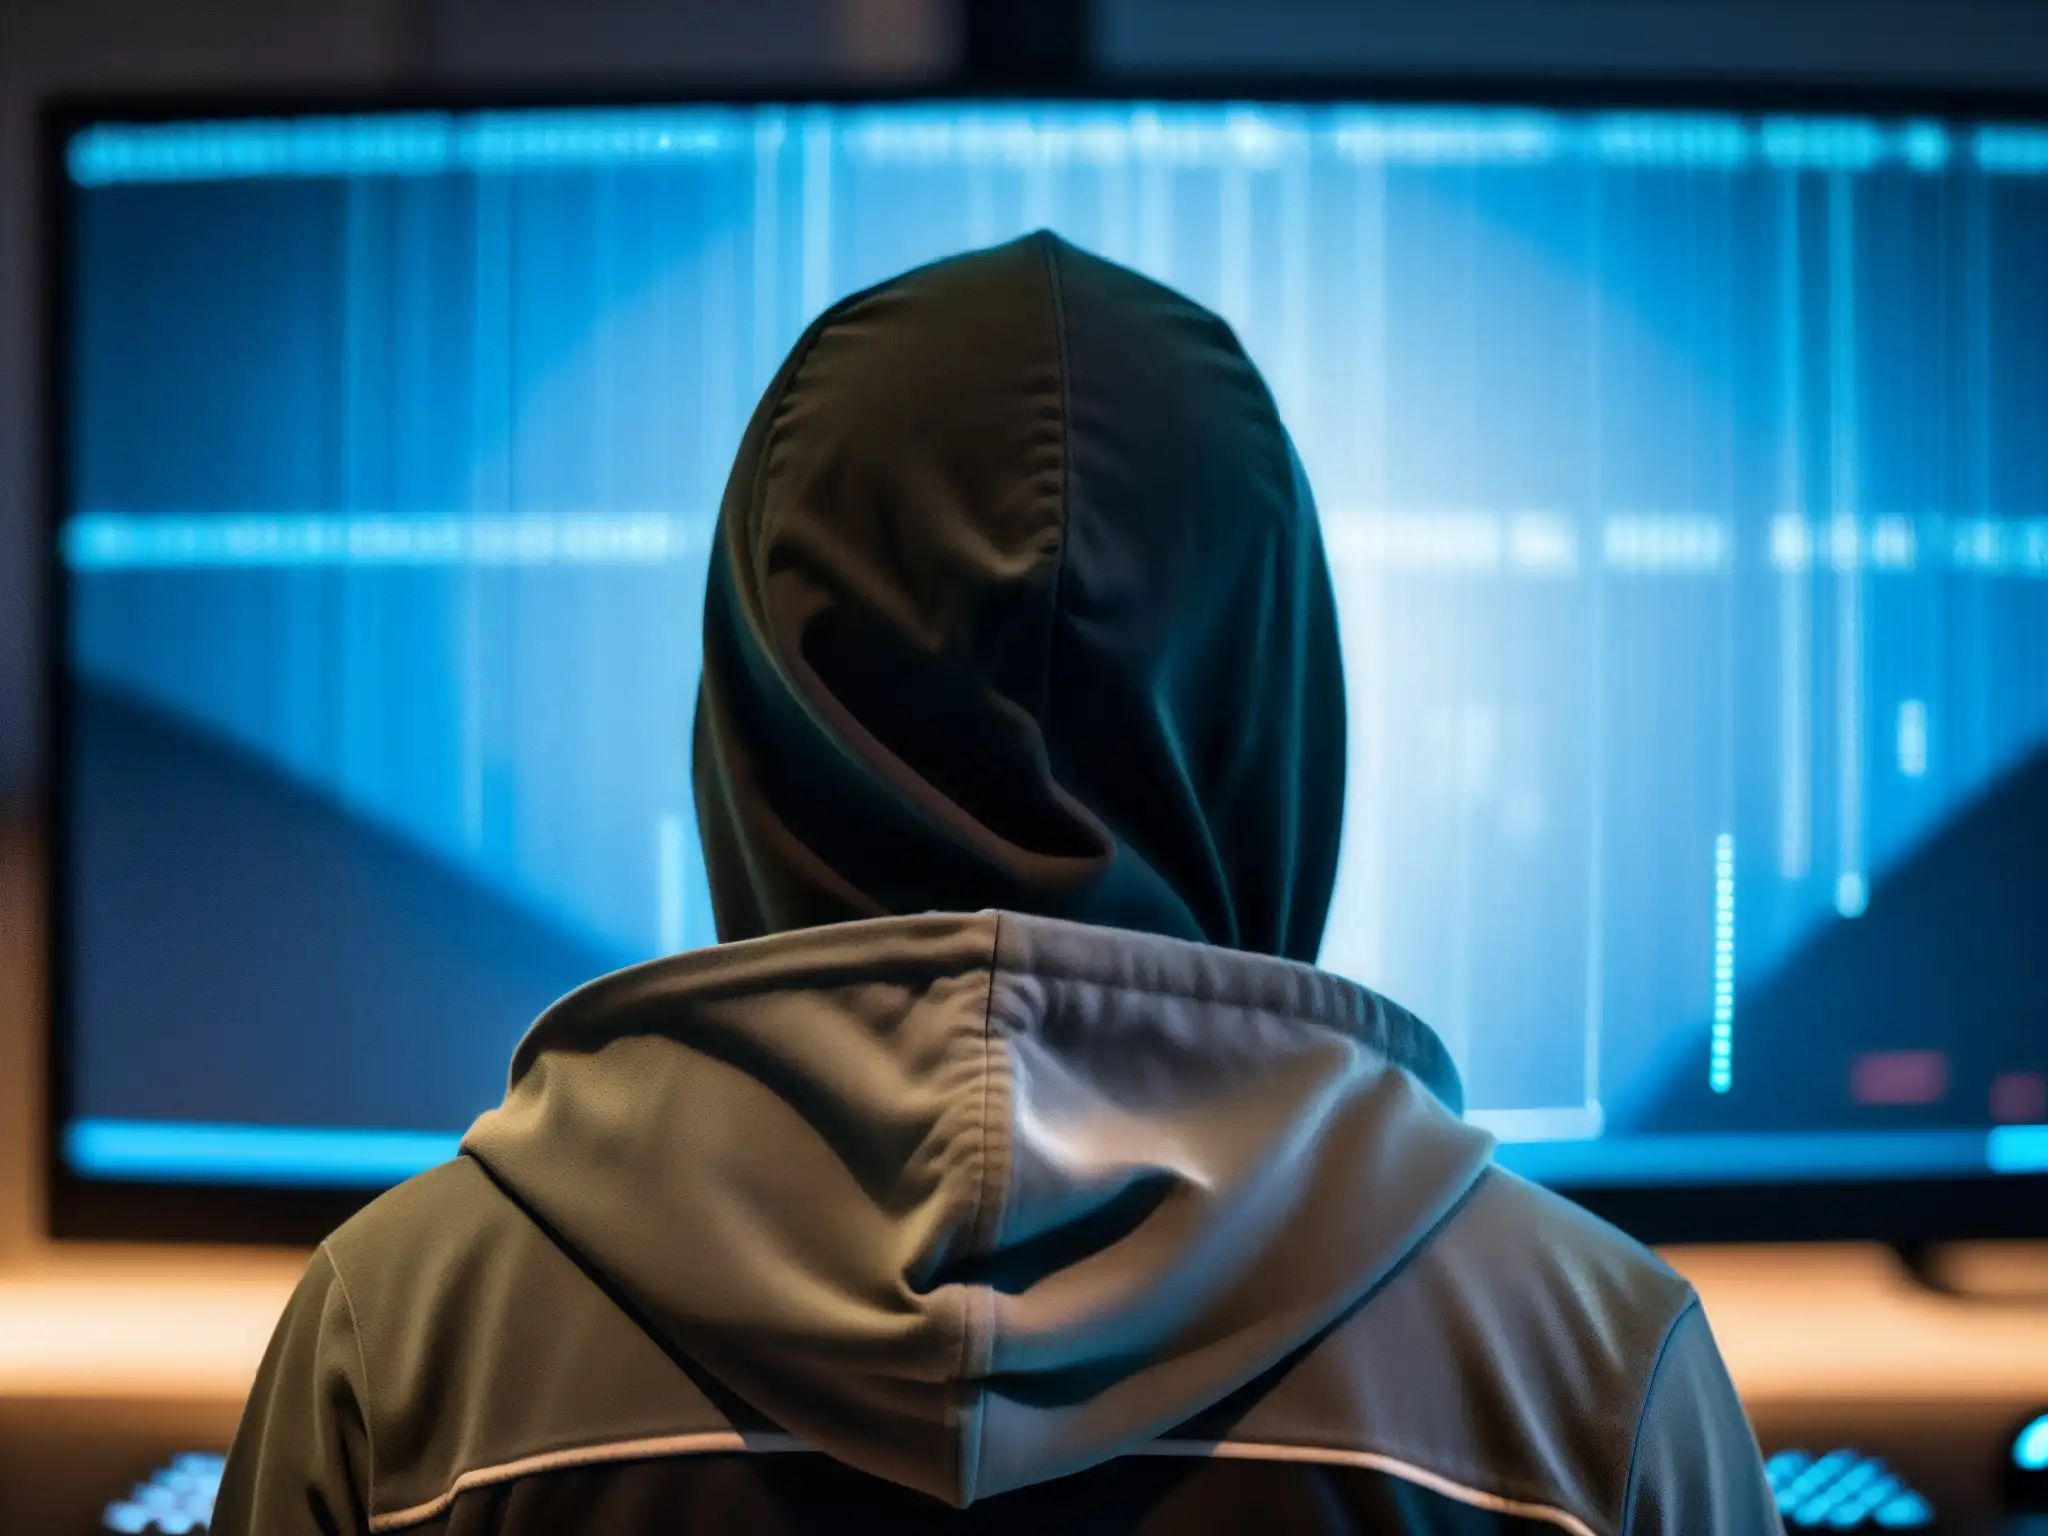 Imagen de un hacker en la penumbra, frente a una pantalla con código, reflejando tensión y determinación